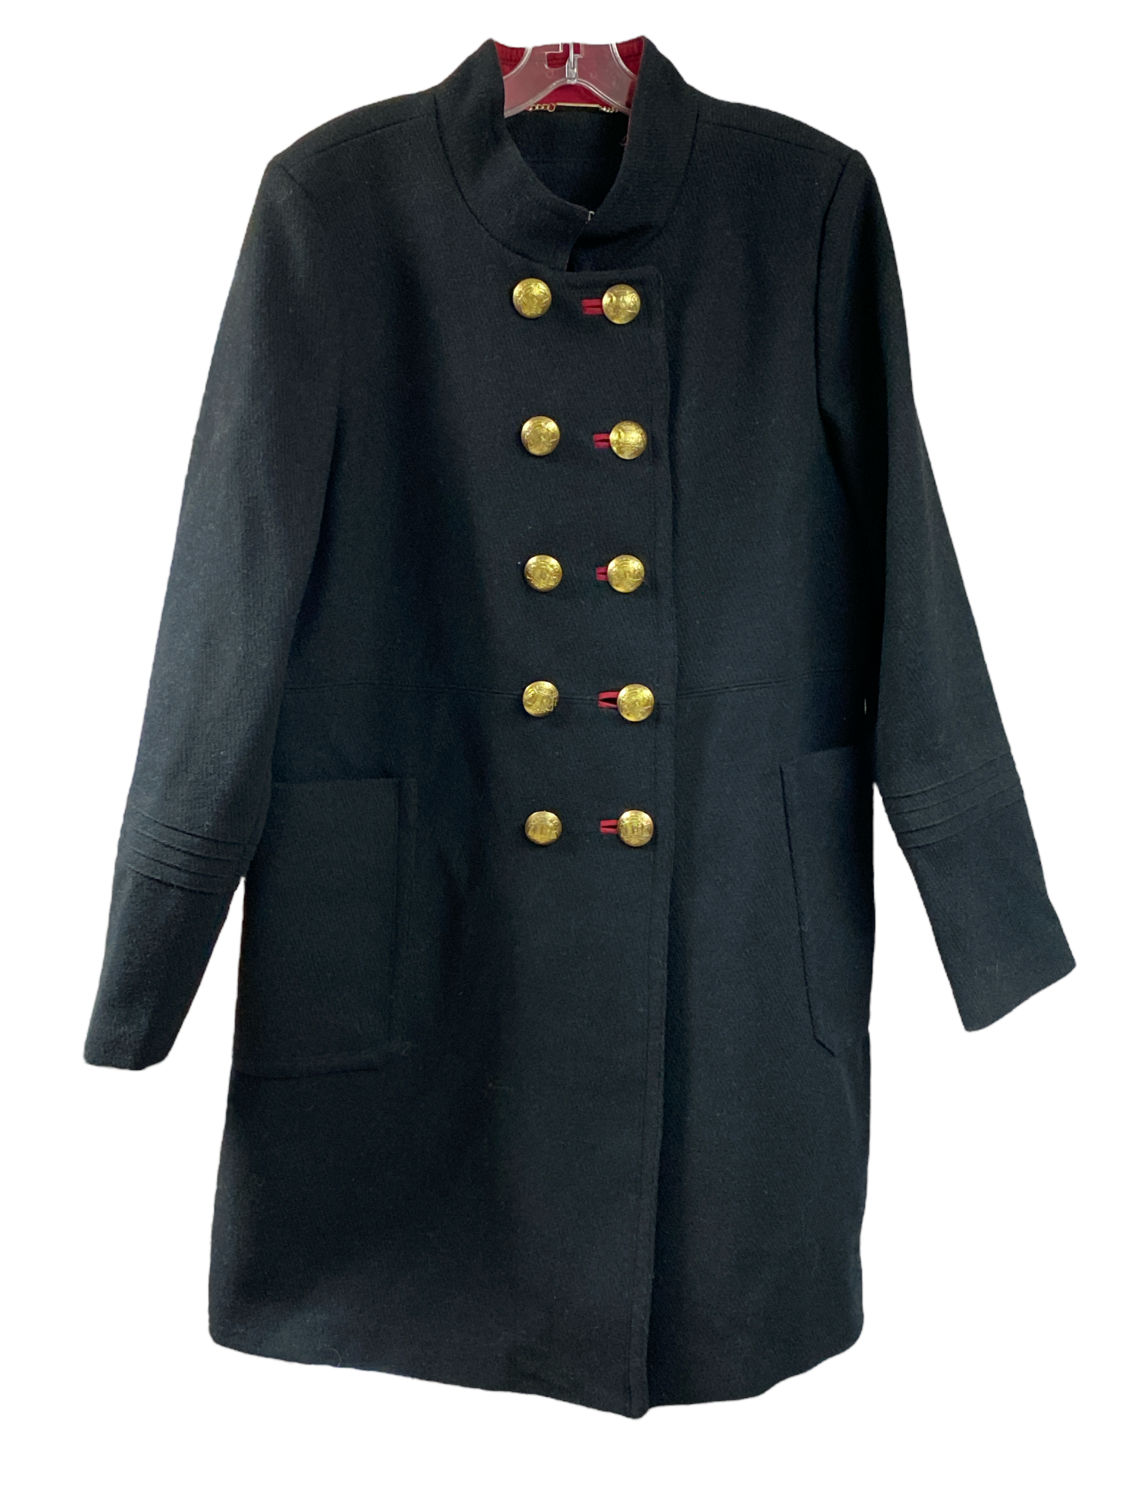 STEVE MADDEN Black Wool Military Style Coat sz XL